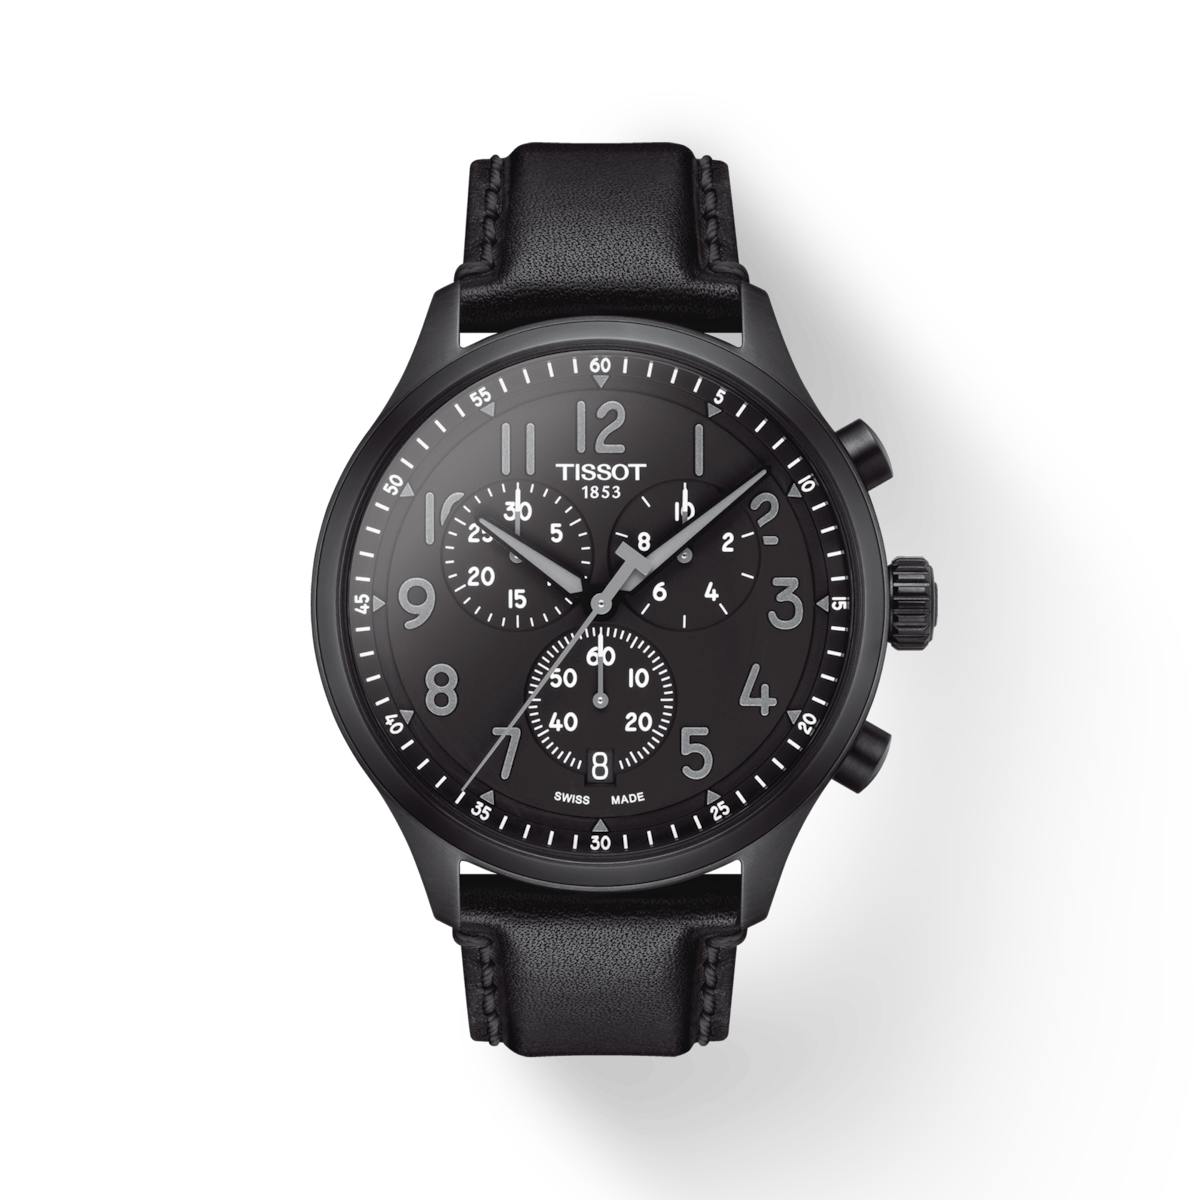 Armani Exchange Hampton men's watch - AX2405